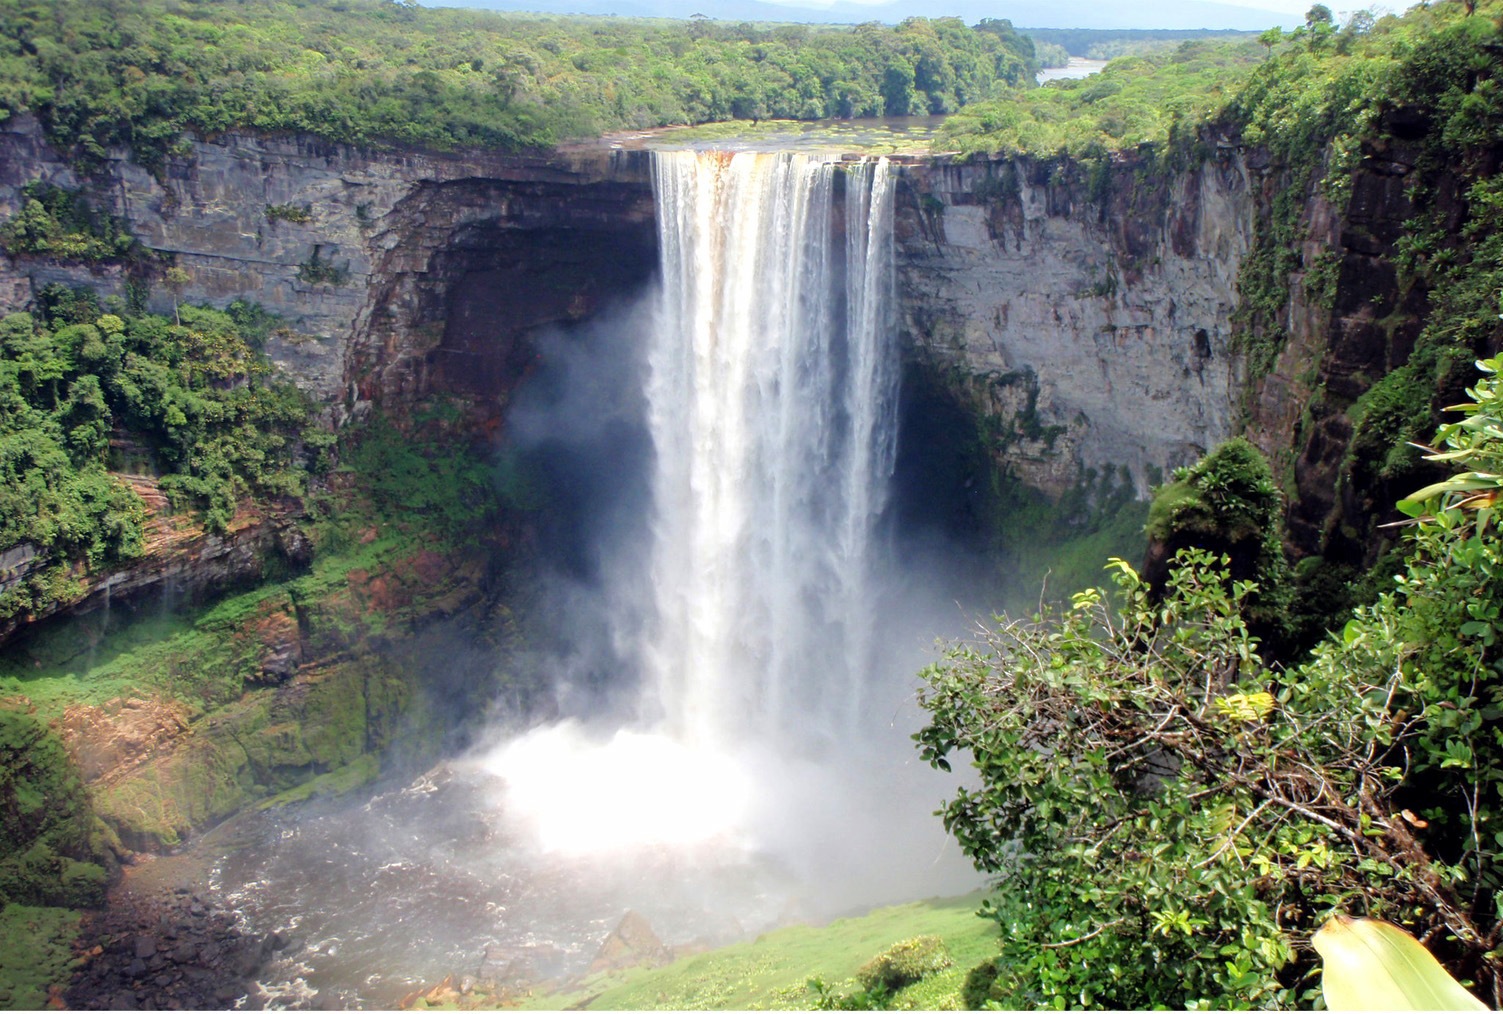 Самый высокий водопад гвианском плоскогорье. Кайетур, Гайана. Национальный парк Кайетур Гайана. Водопад Кайетур. Гвианское плоскогорье водопад Анхель.